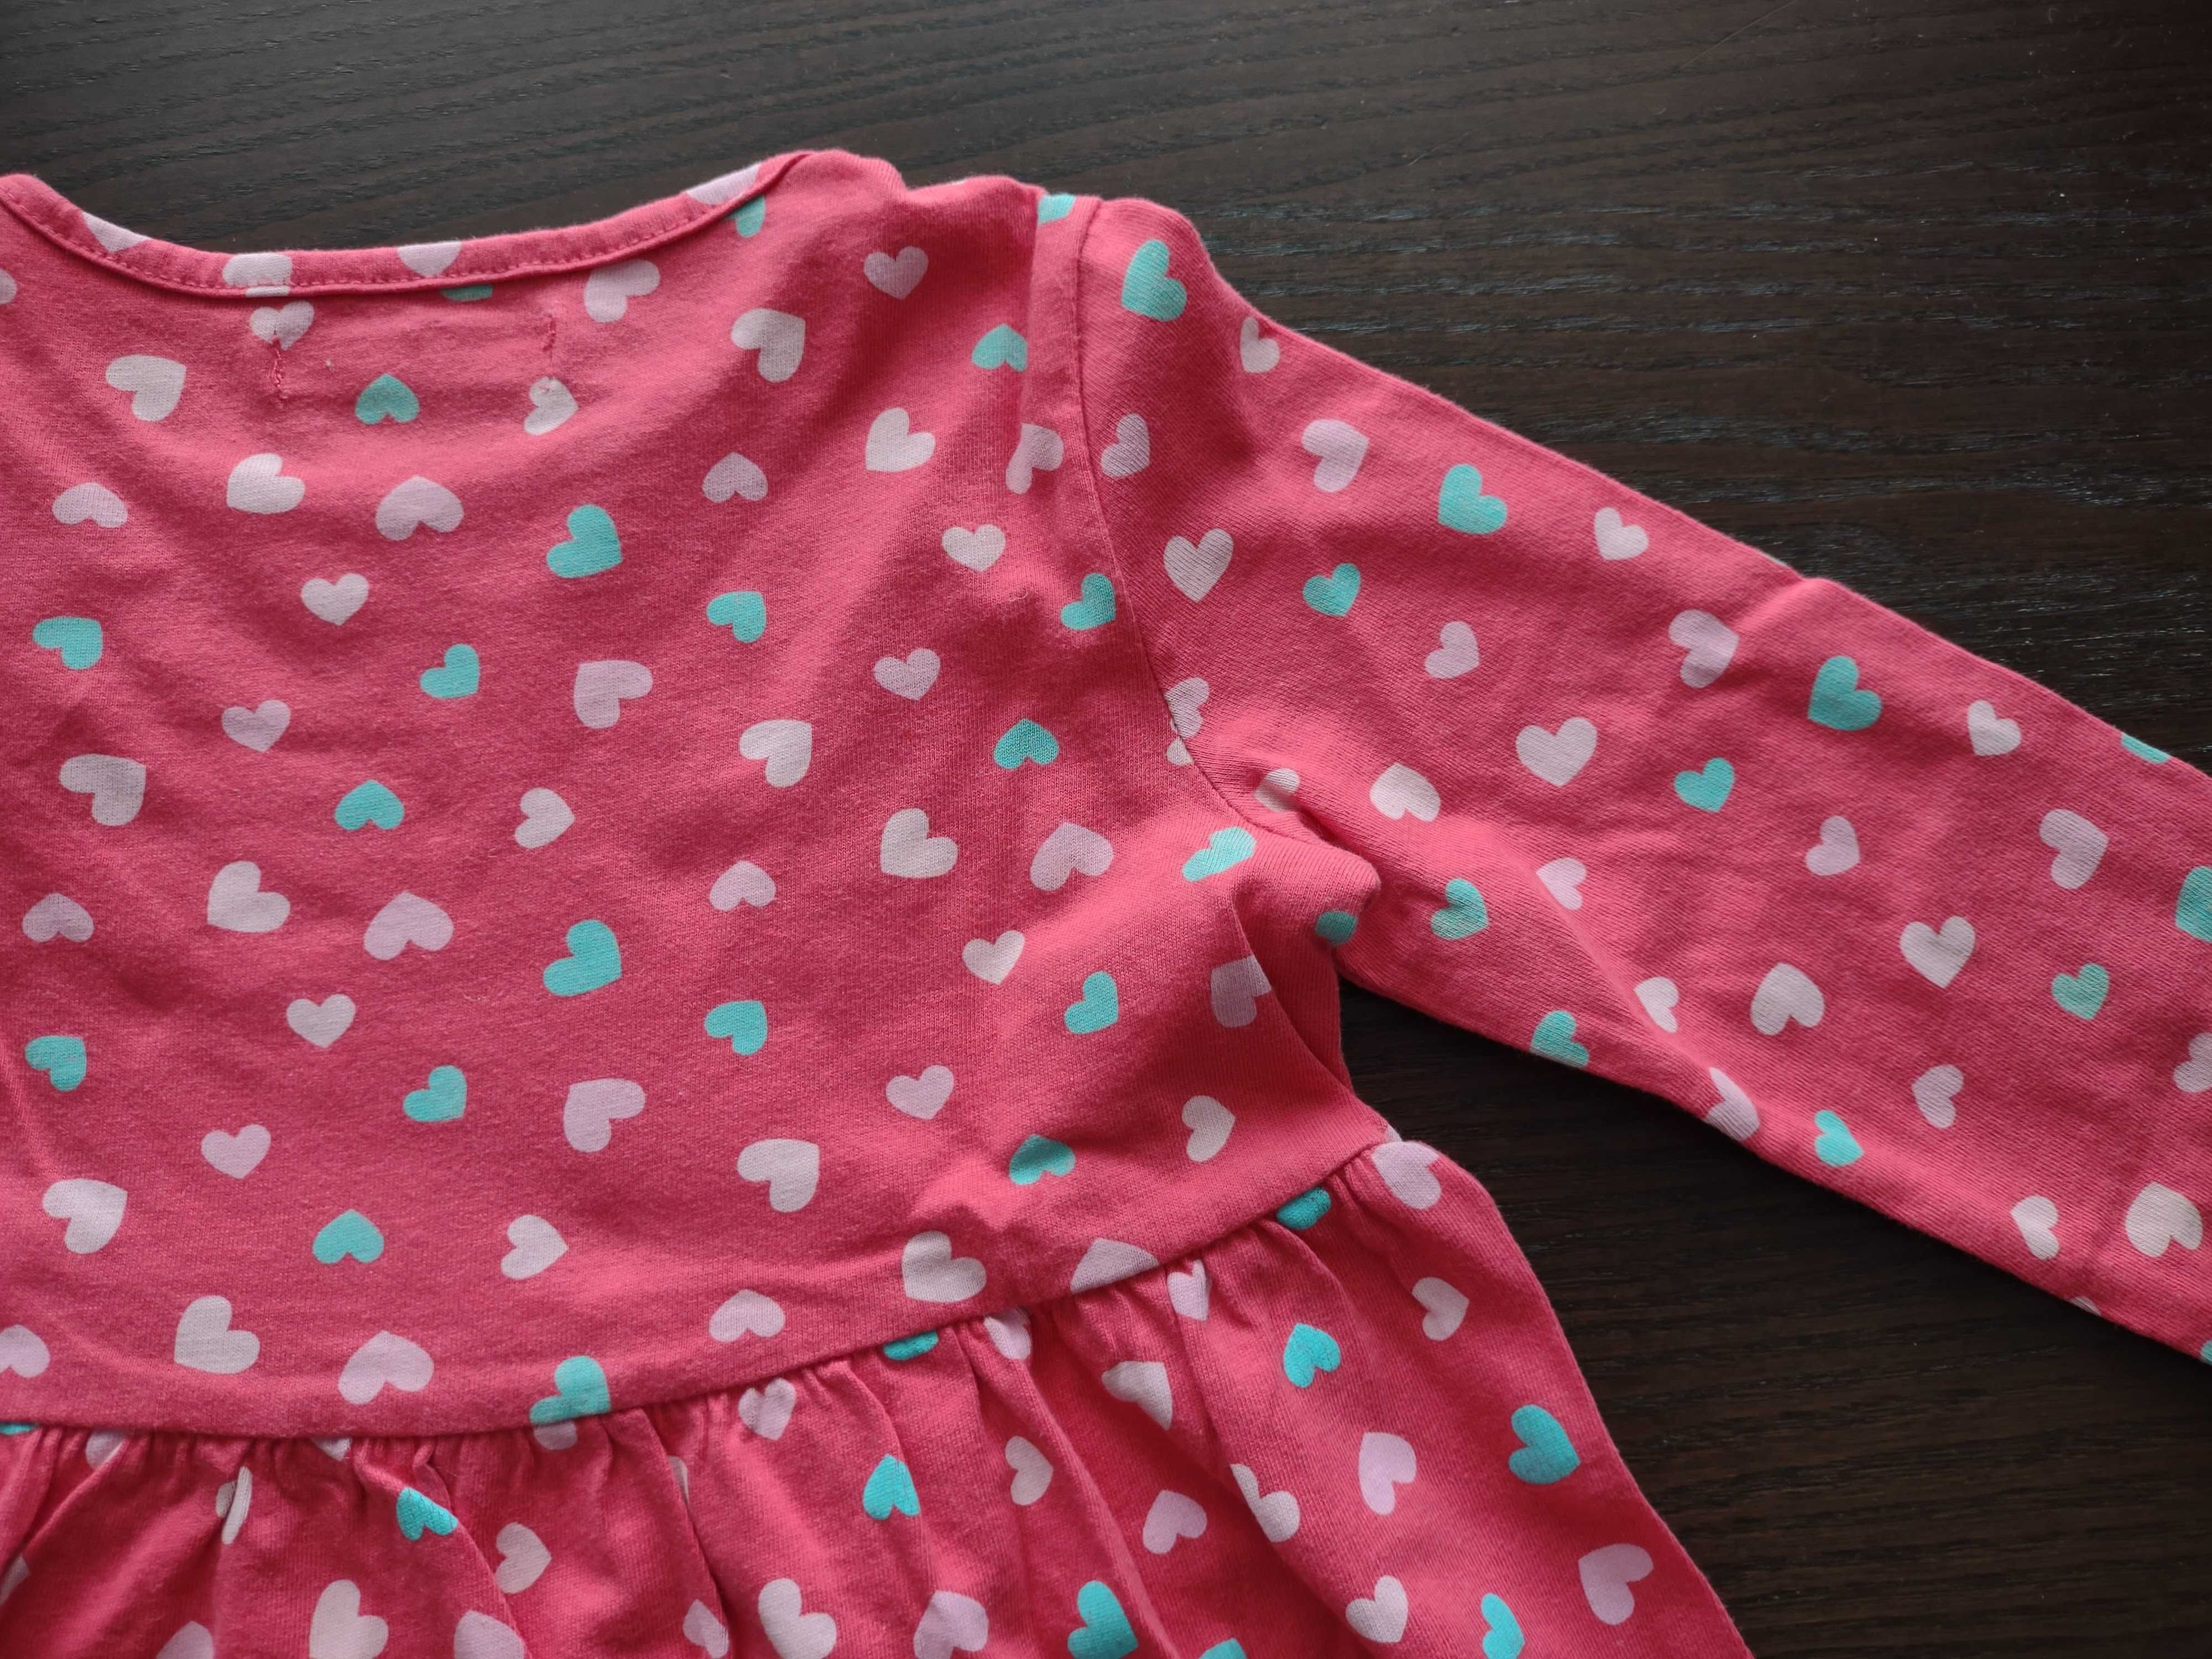 Sukienka - 98 cm, malinowy kolor we wzory, długi rękaw - dla dziecka